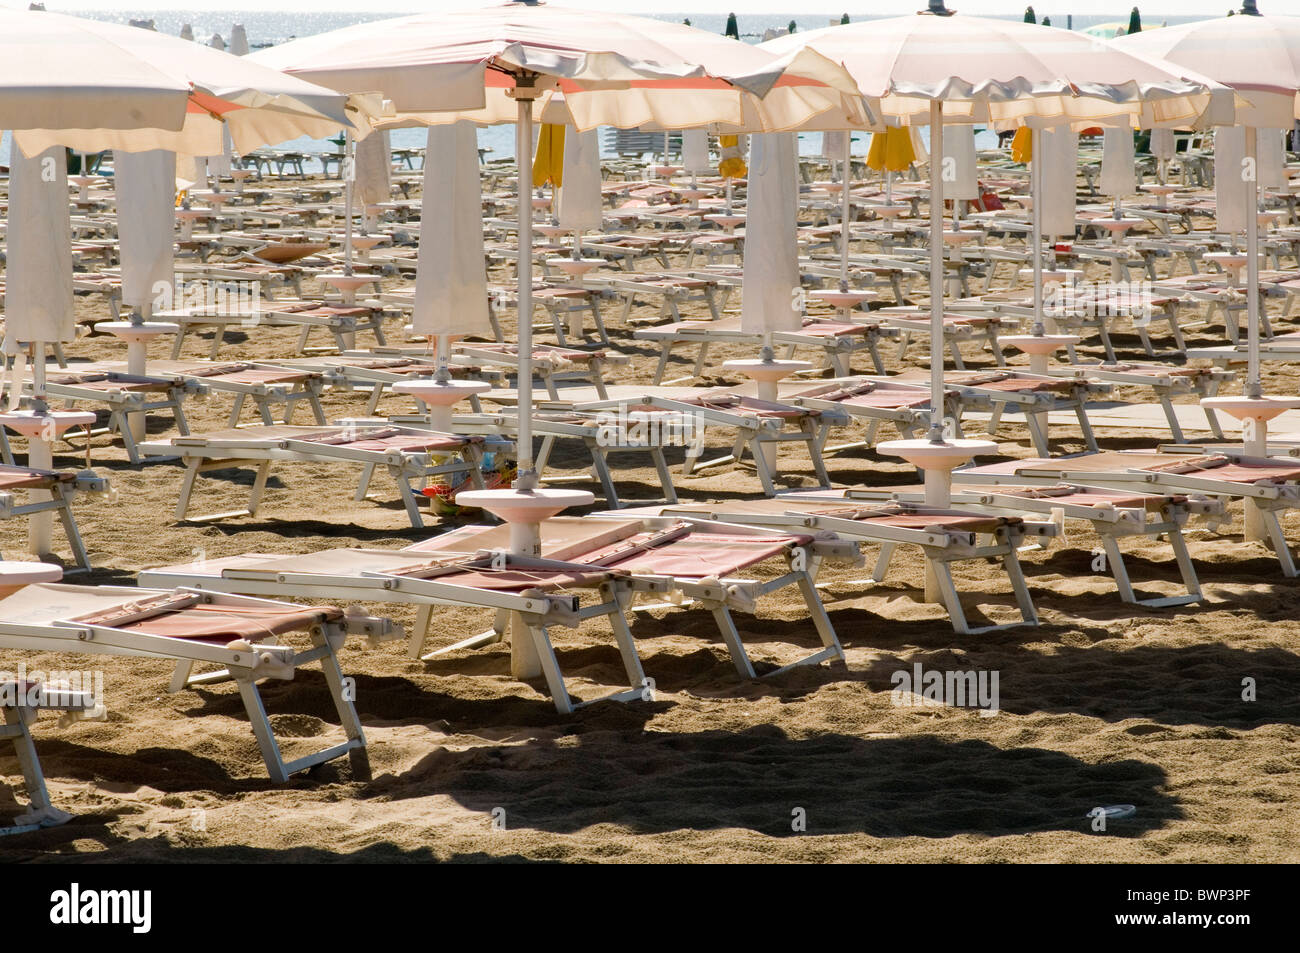 Sonnenliege Sonnenliege auf italienische private Strand Strände Paket Urlaub Tourismus Tourist Italien Liegewiese Sonne Sonnencreme Sonnenbaden s Stockfoto